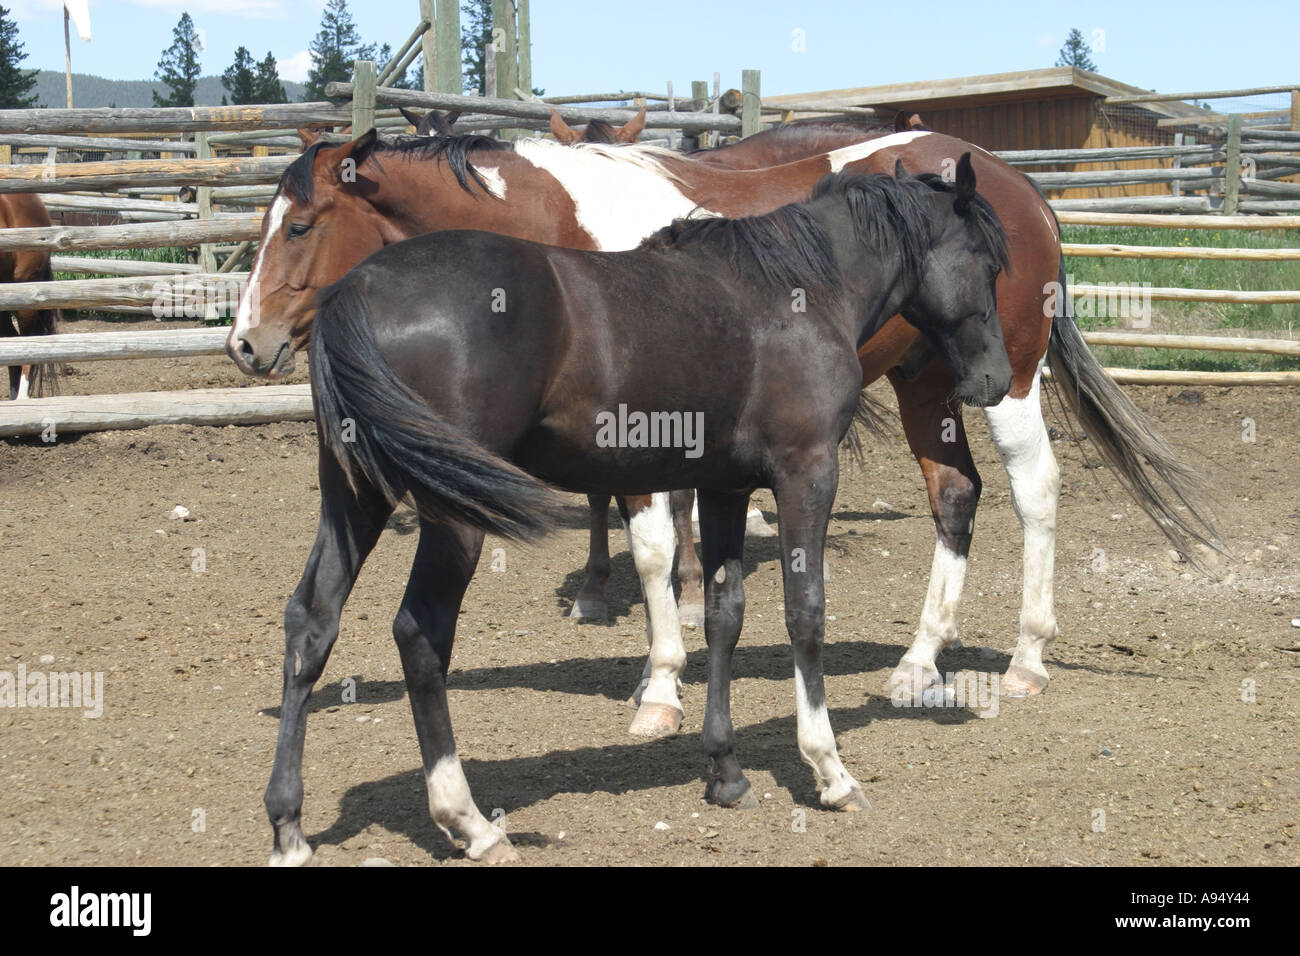 Coda di cavallo nero immagini e fotografie stock ad alta risoluzione - Alamy